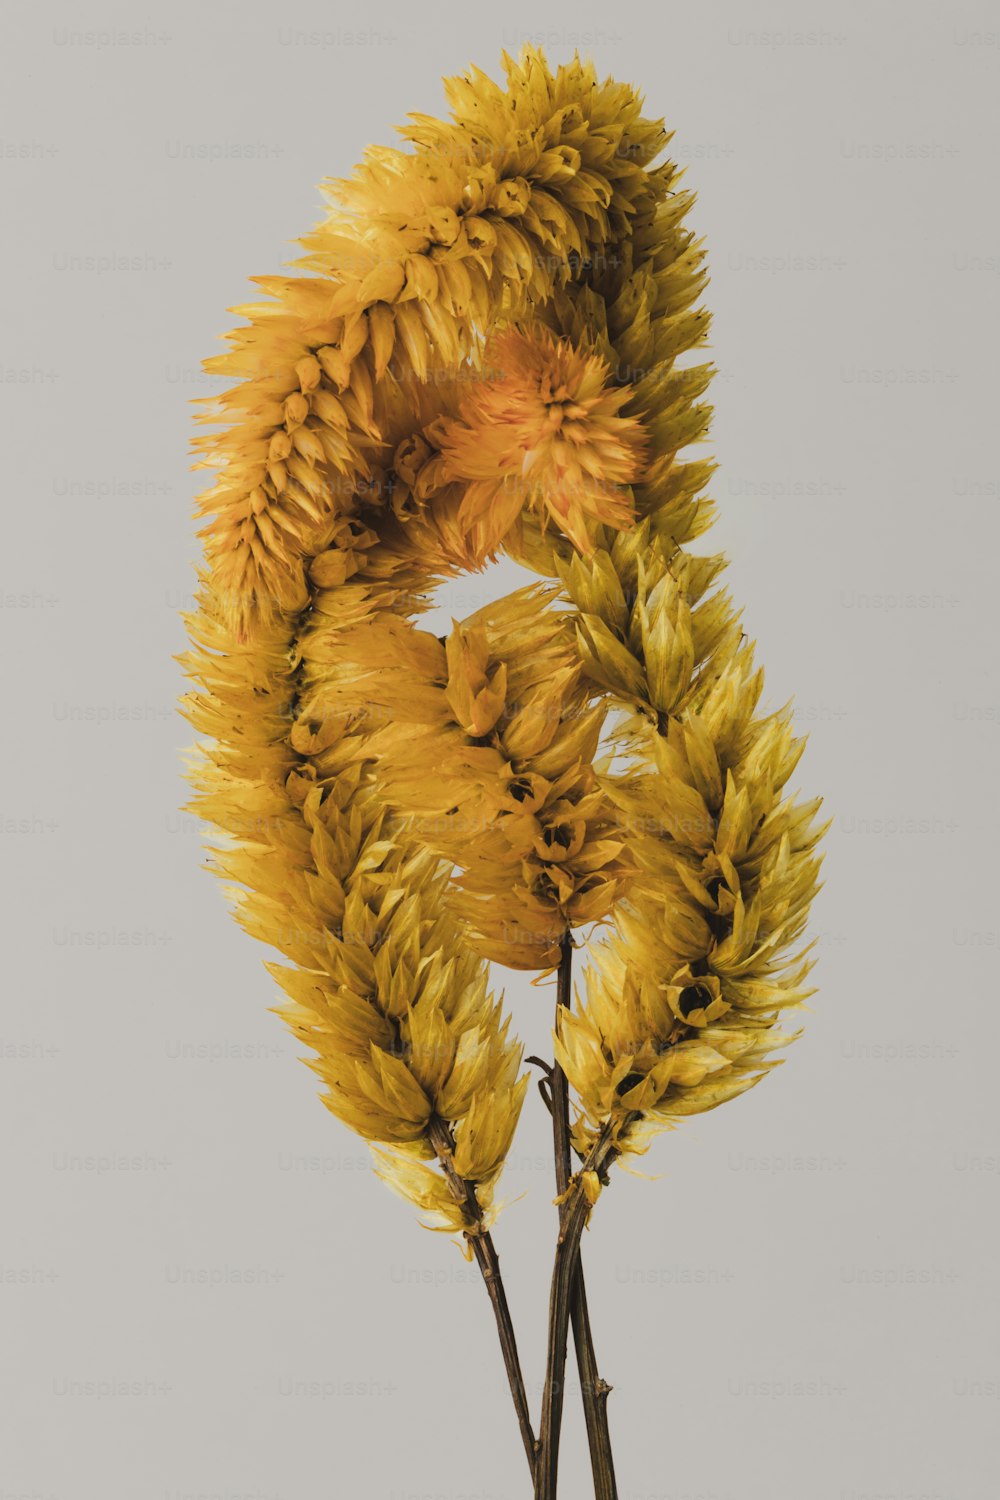 Un primer plano de una planta con flores amarillas